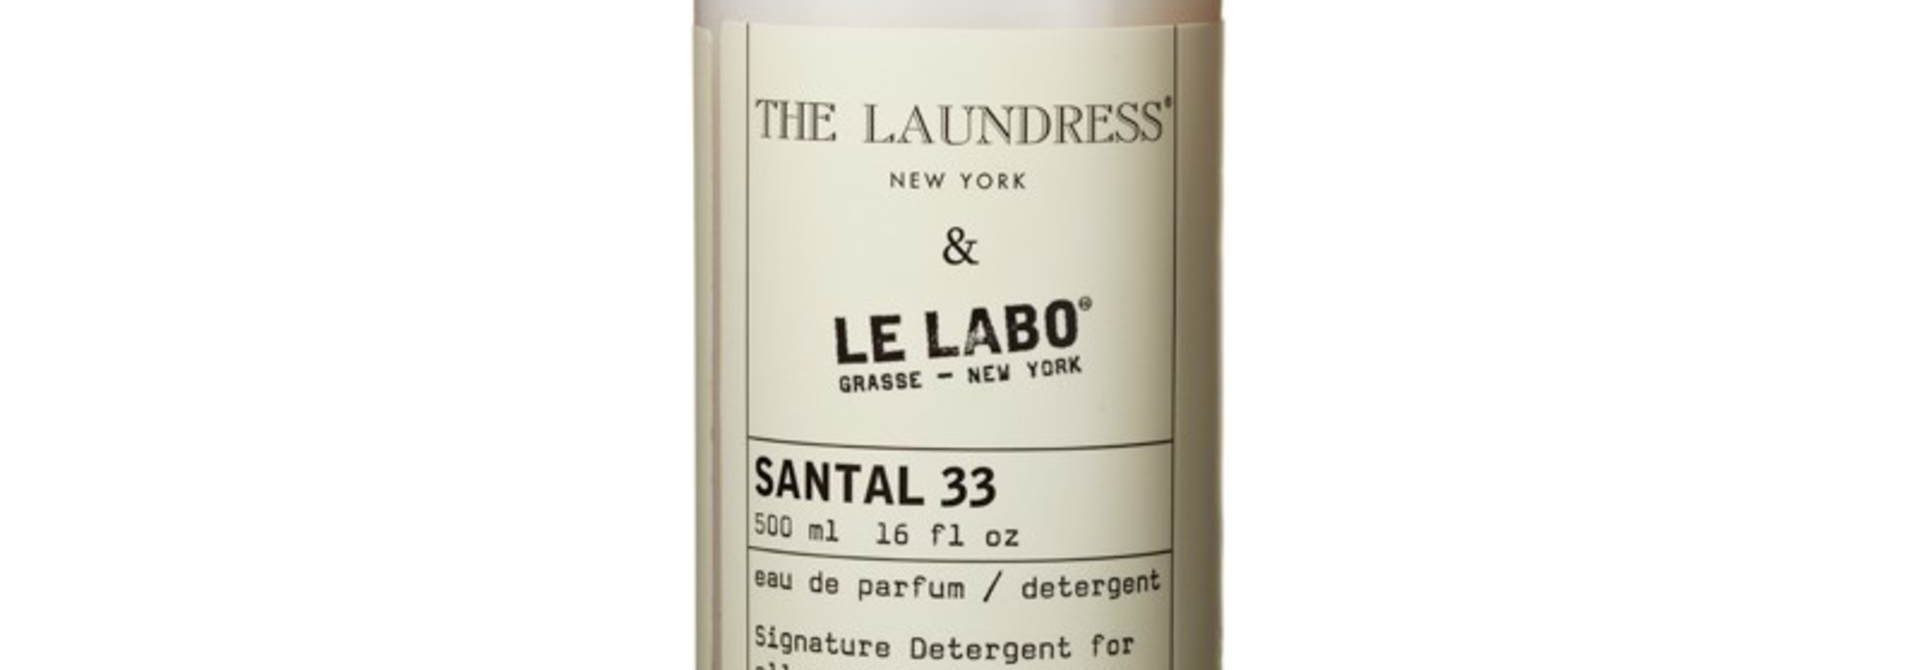 THE LAUNDRESS X LE LABO SANTAL 33 DETERGENT